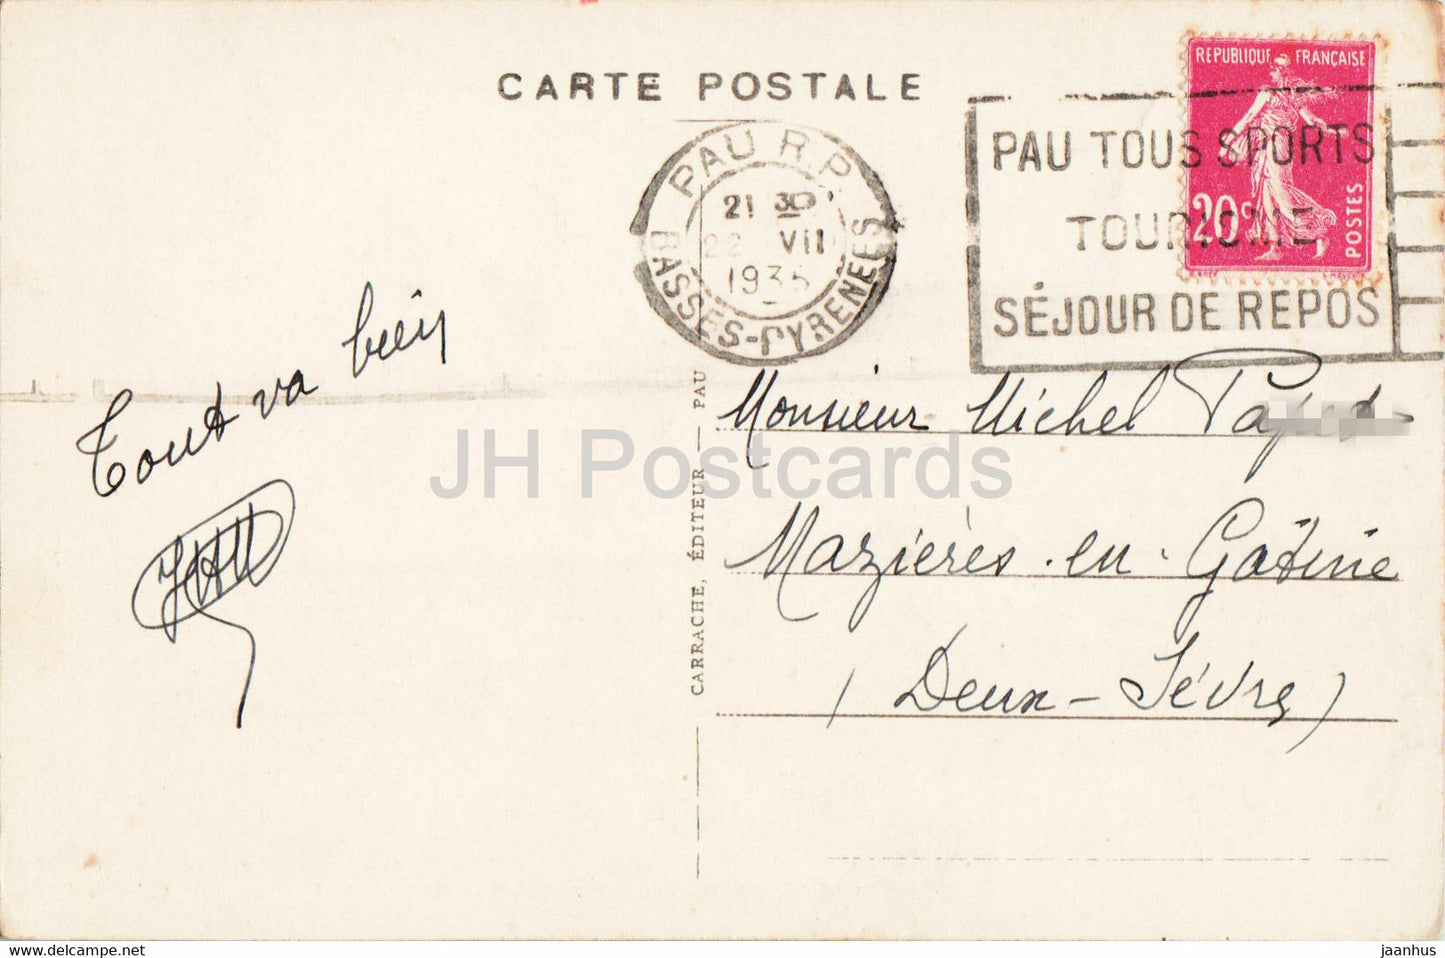 Pau - Le Chateau - Facade Principale - 1 - castle - old postcard - 1935 - France - used